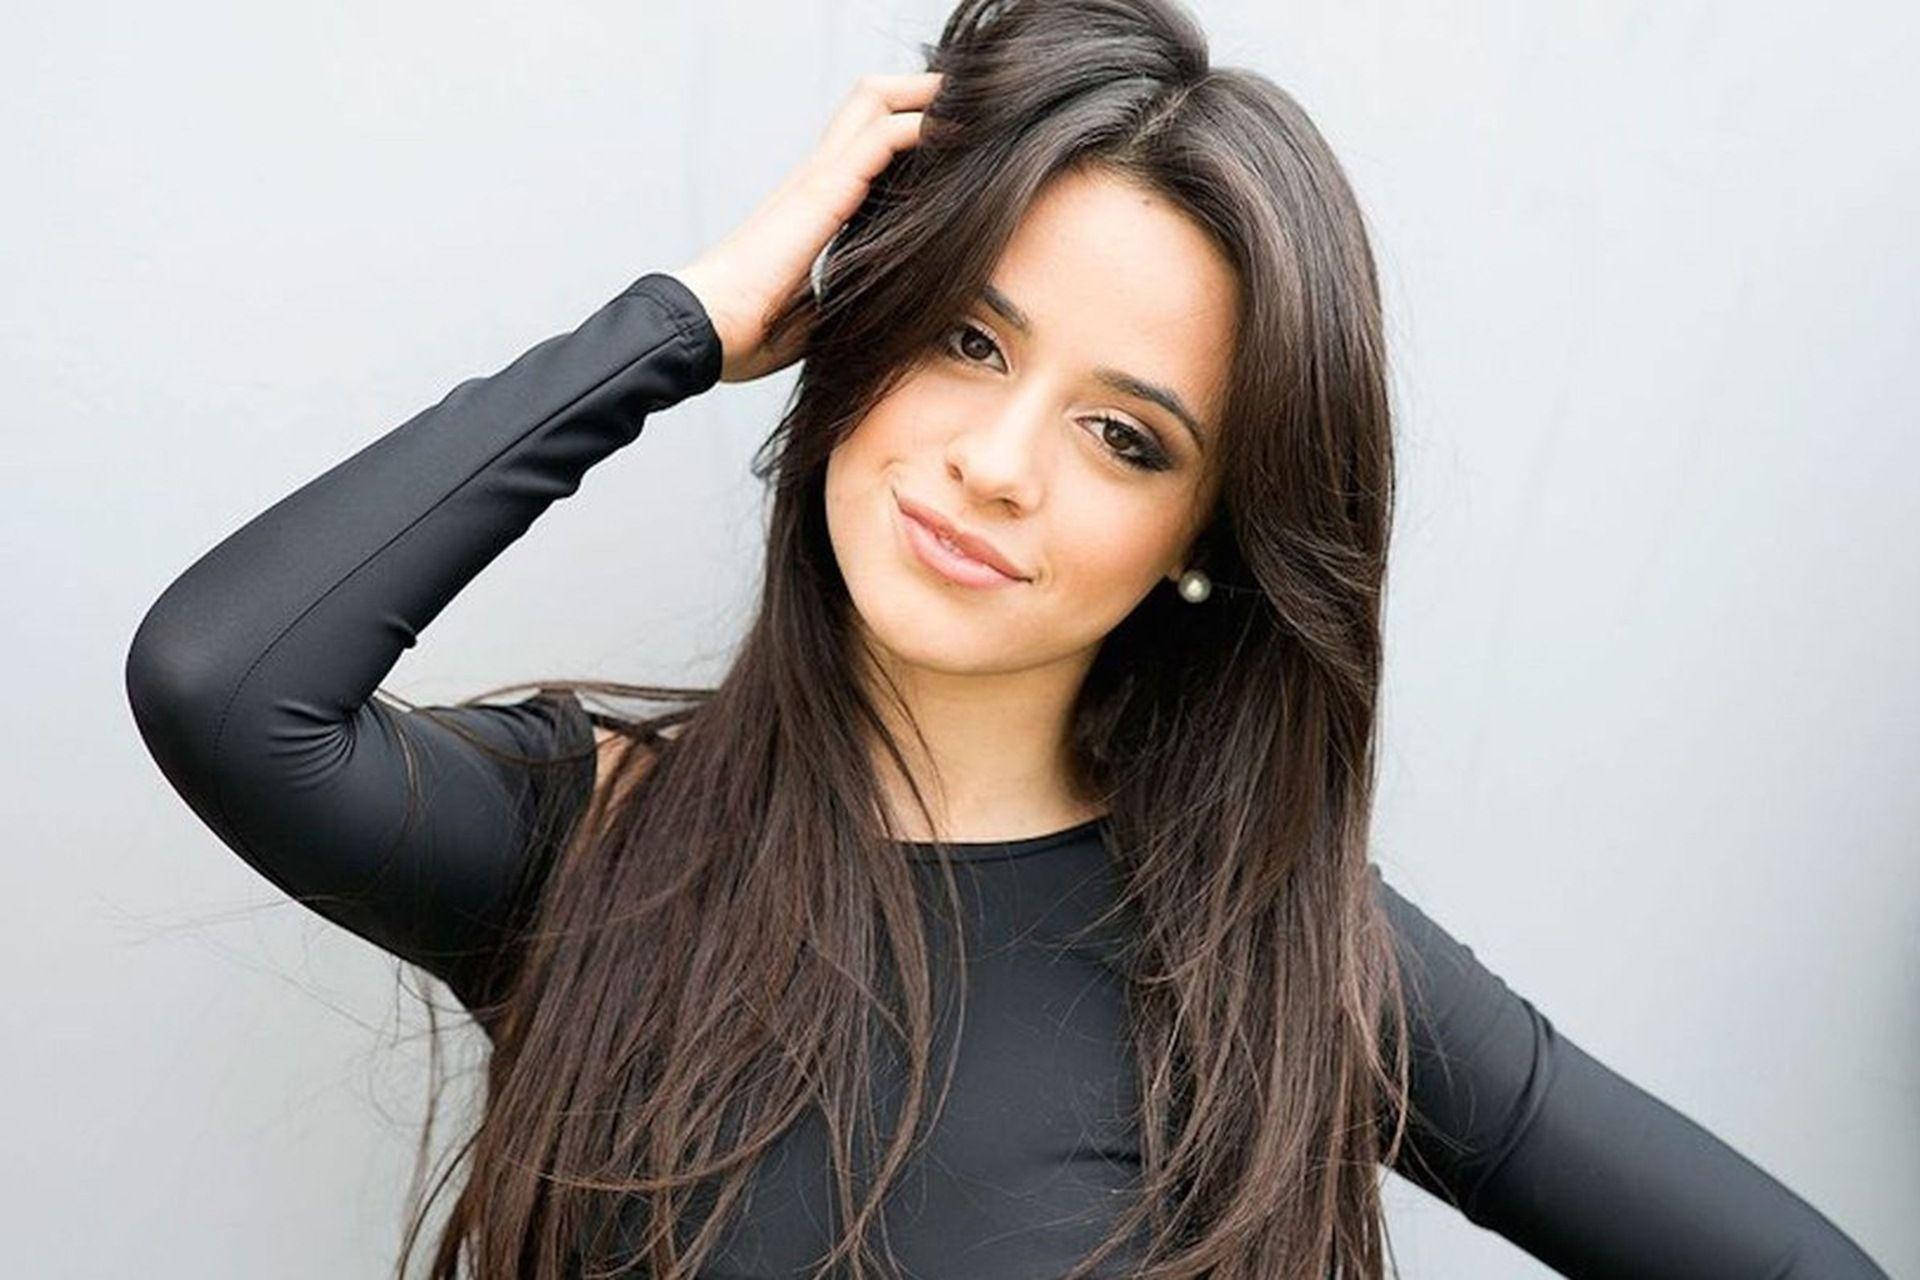 Young Singer Camila Cabello